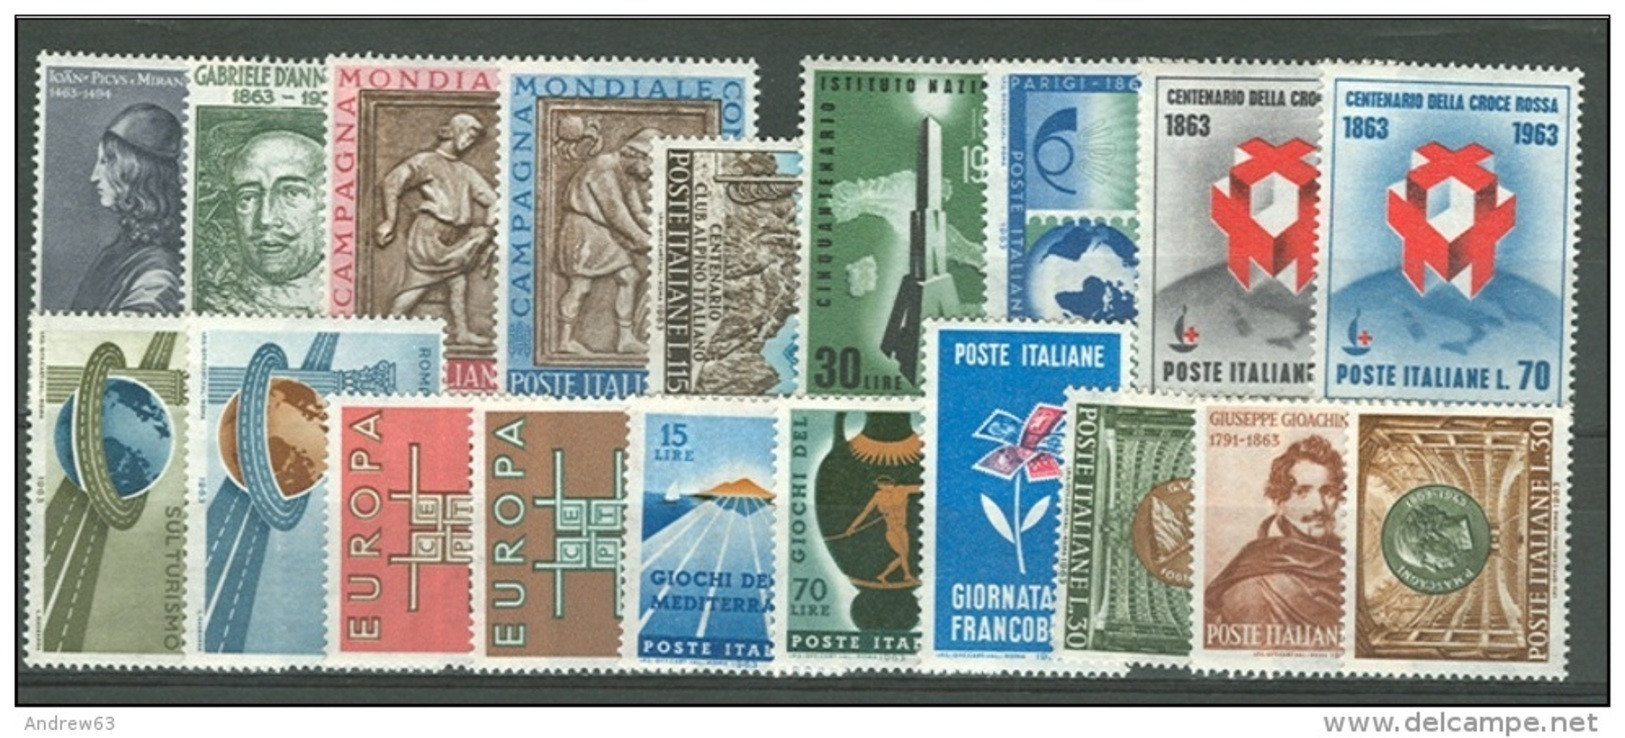 ITALIA REPUBBLICA - 1963 - Annata Completa - 19 Valori - Complete Year - ** MNH/VF - Años Completos